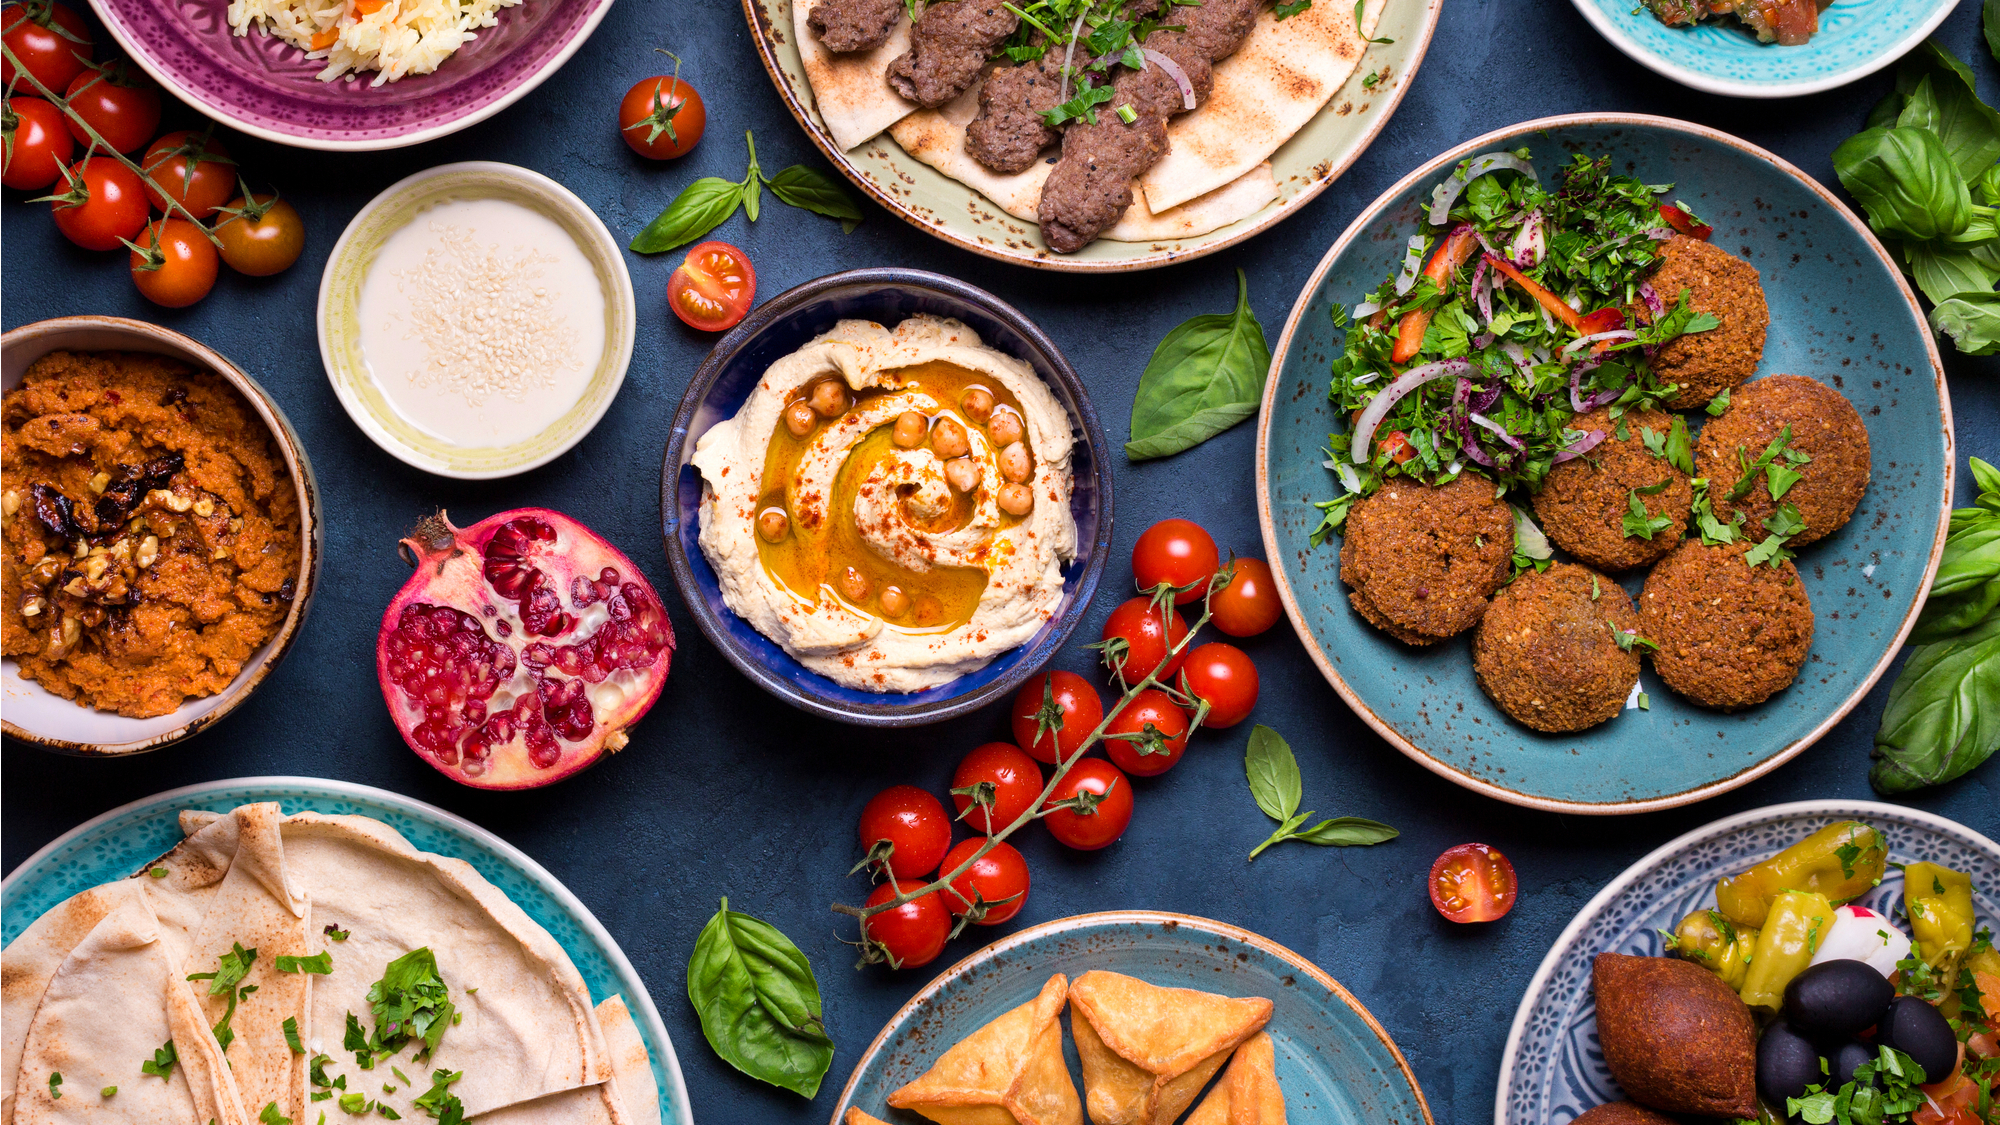 Houmous libanais - Recette 100% authentique et facile - Ma Cuisine Libanaise